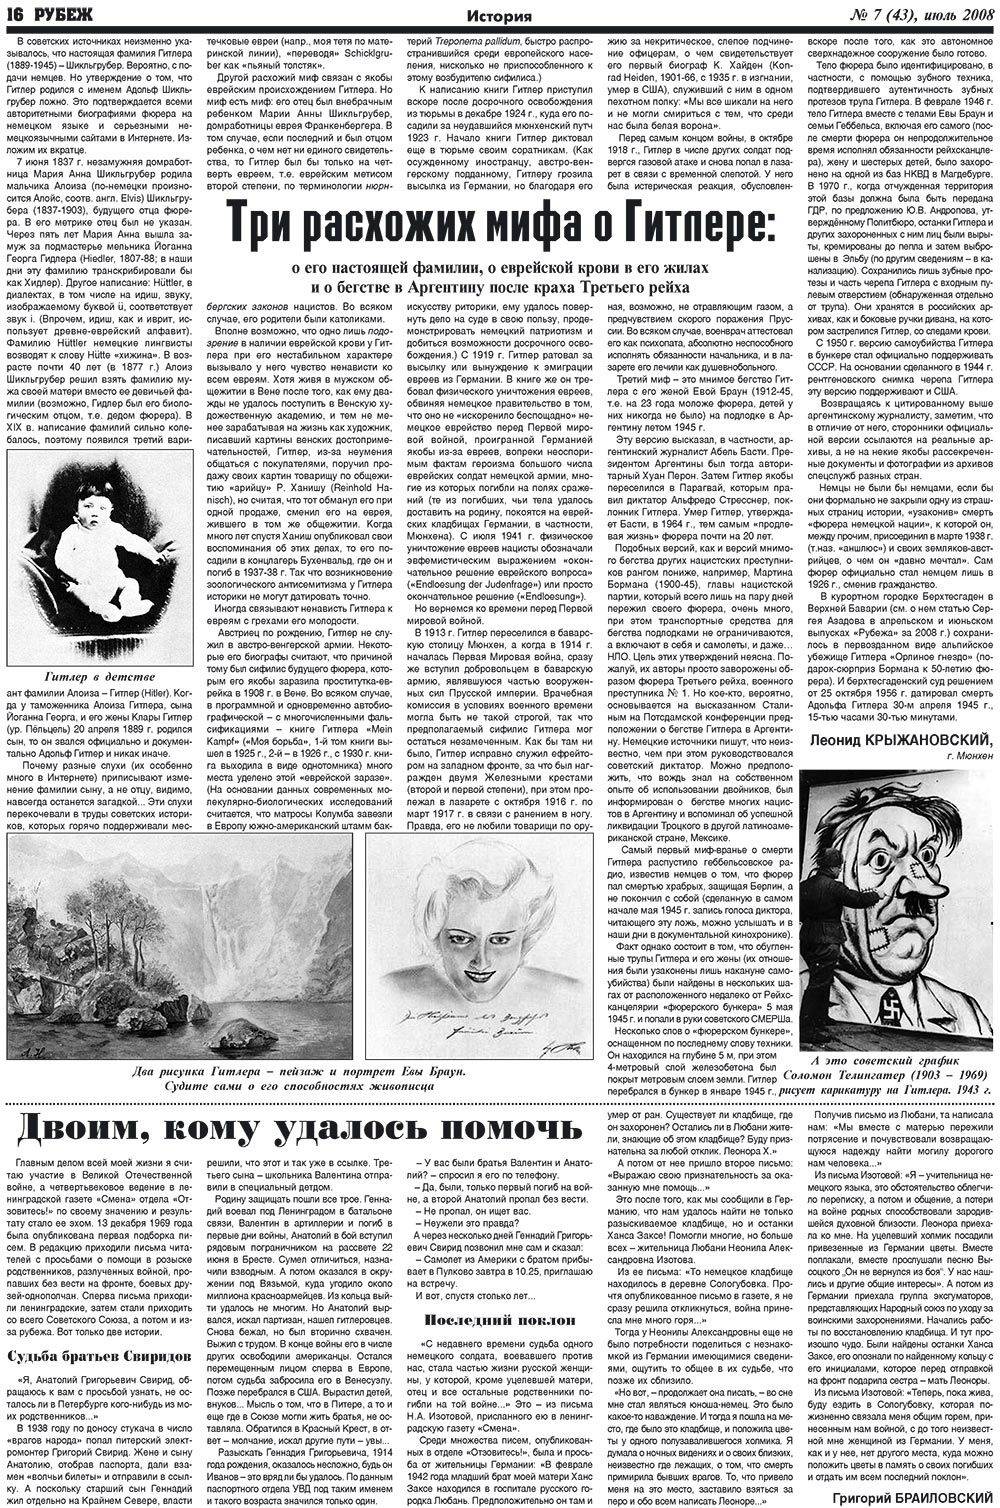 Рубеж (газета). 2008 год, номер 7, стр. 16